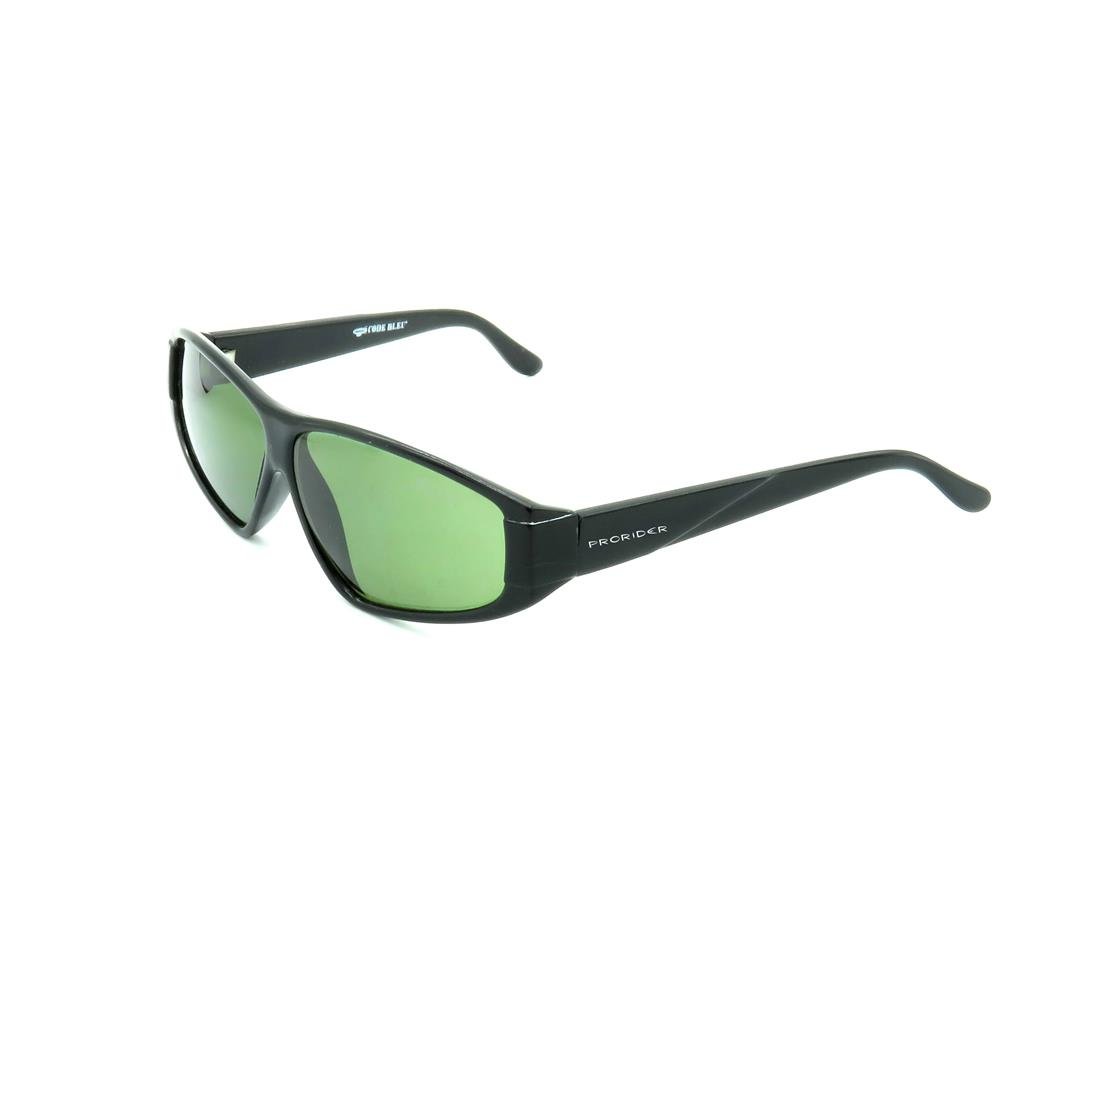 Óculos de Sol Prorider Retrô Preto Brilhante com Lente Fumê Verde - CODE-R8 Preto 1